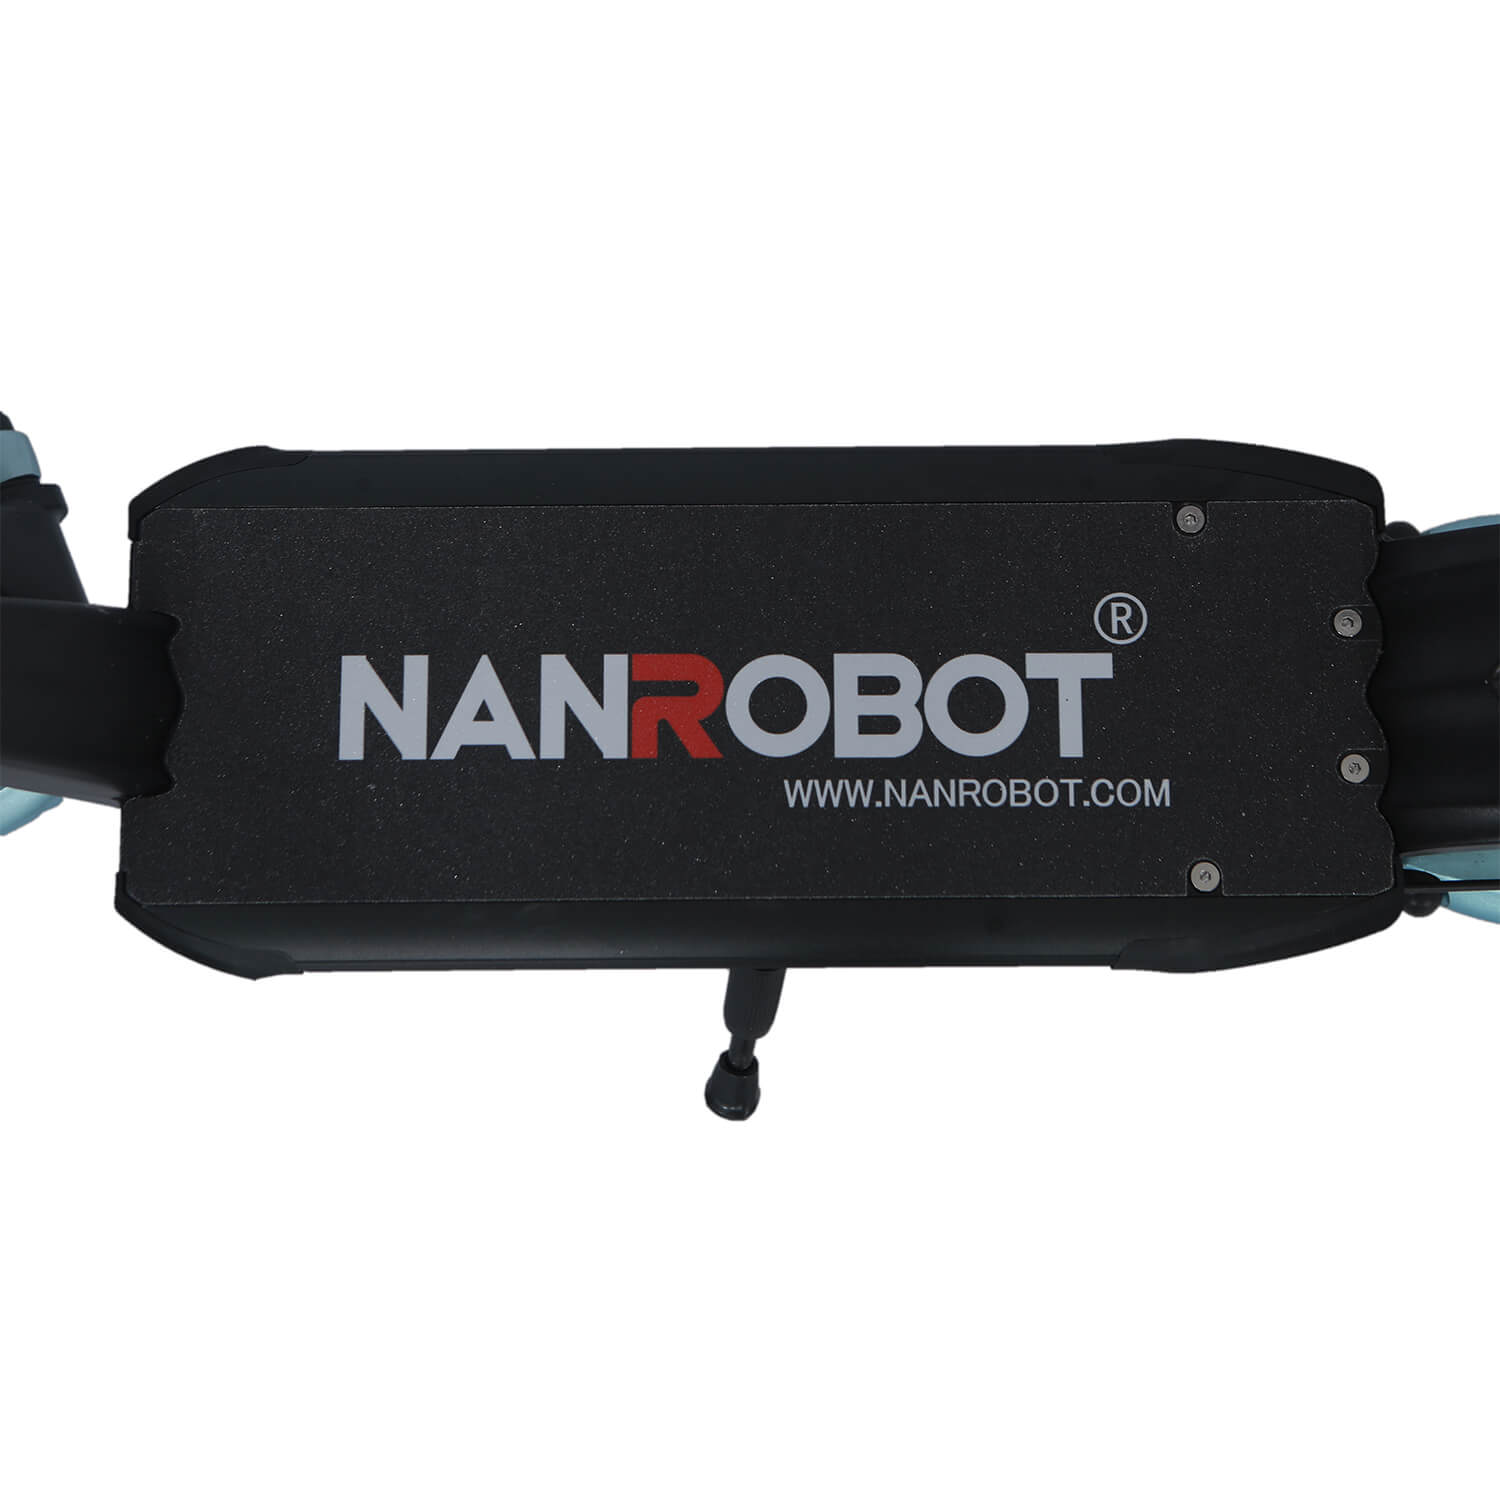 NANROBOT LIGHTNING ELECTRIC SCOOTER 8”WIDE WHEEL EVOLUTION-1600W-48V 18Ah - NANROBOT